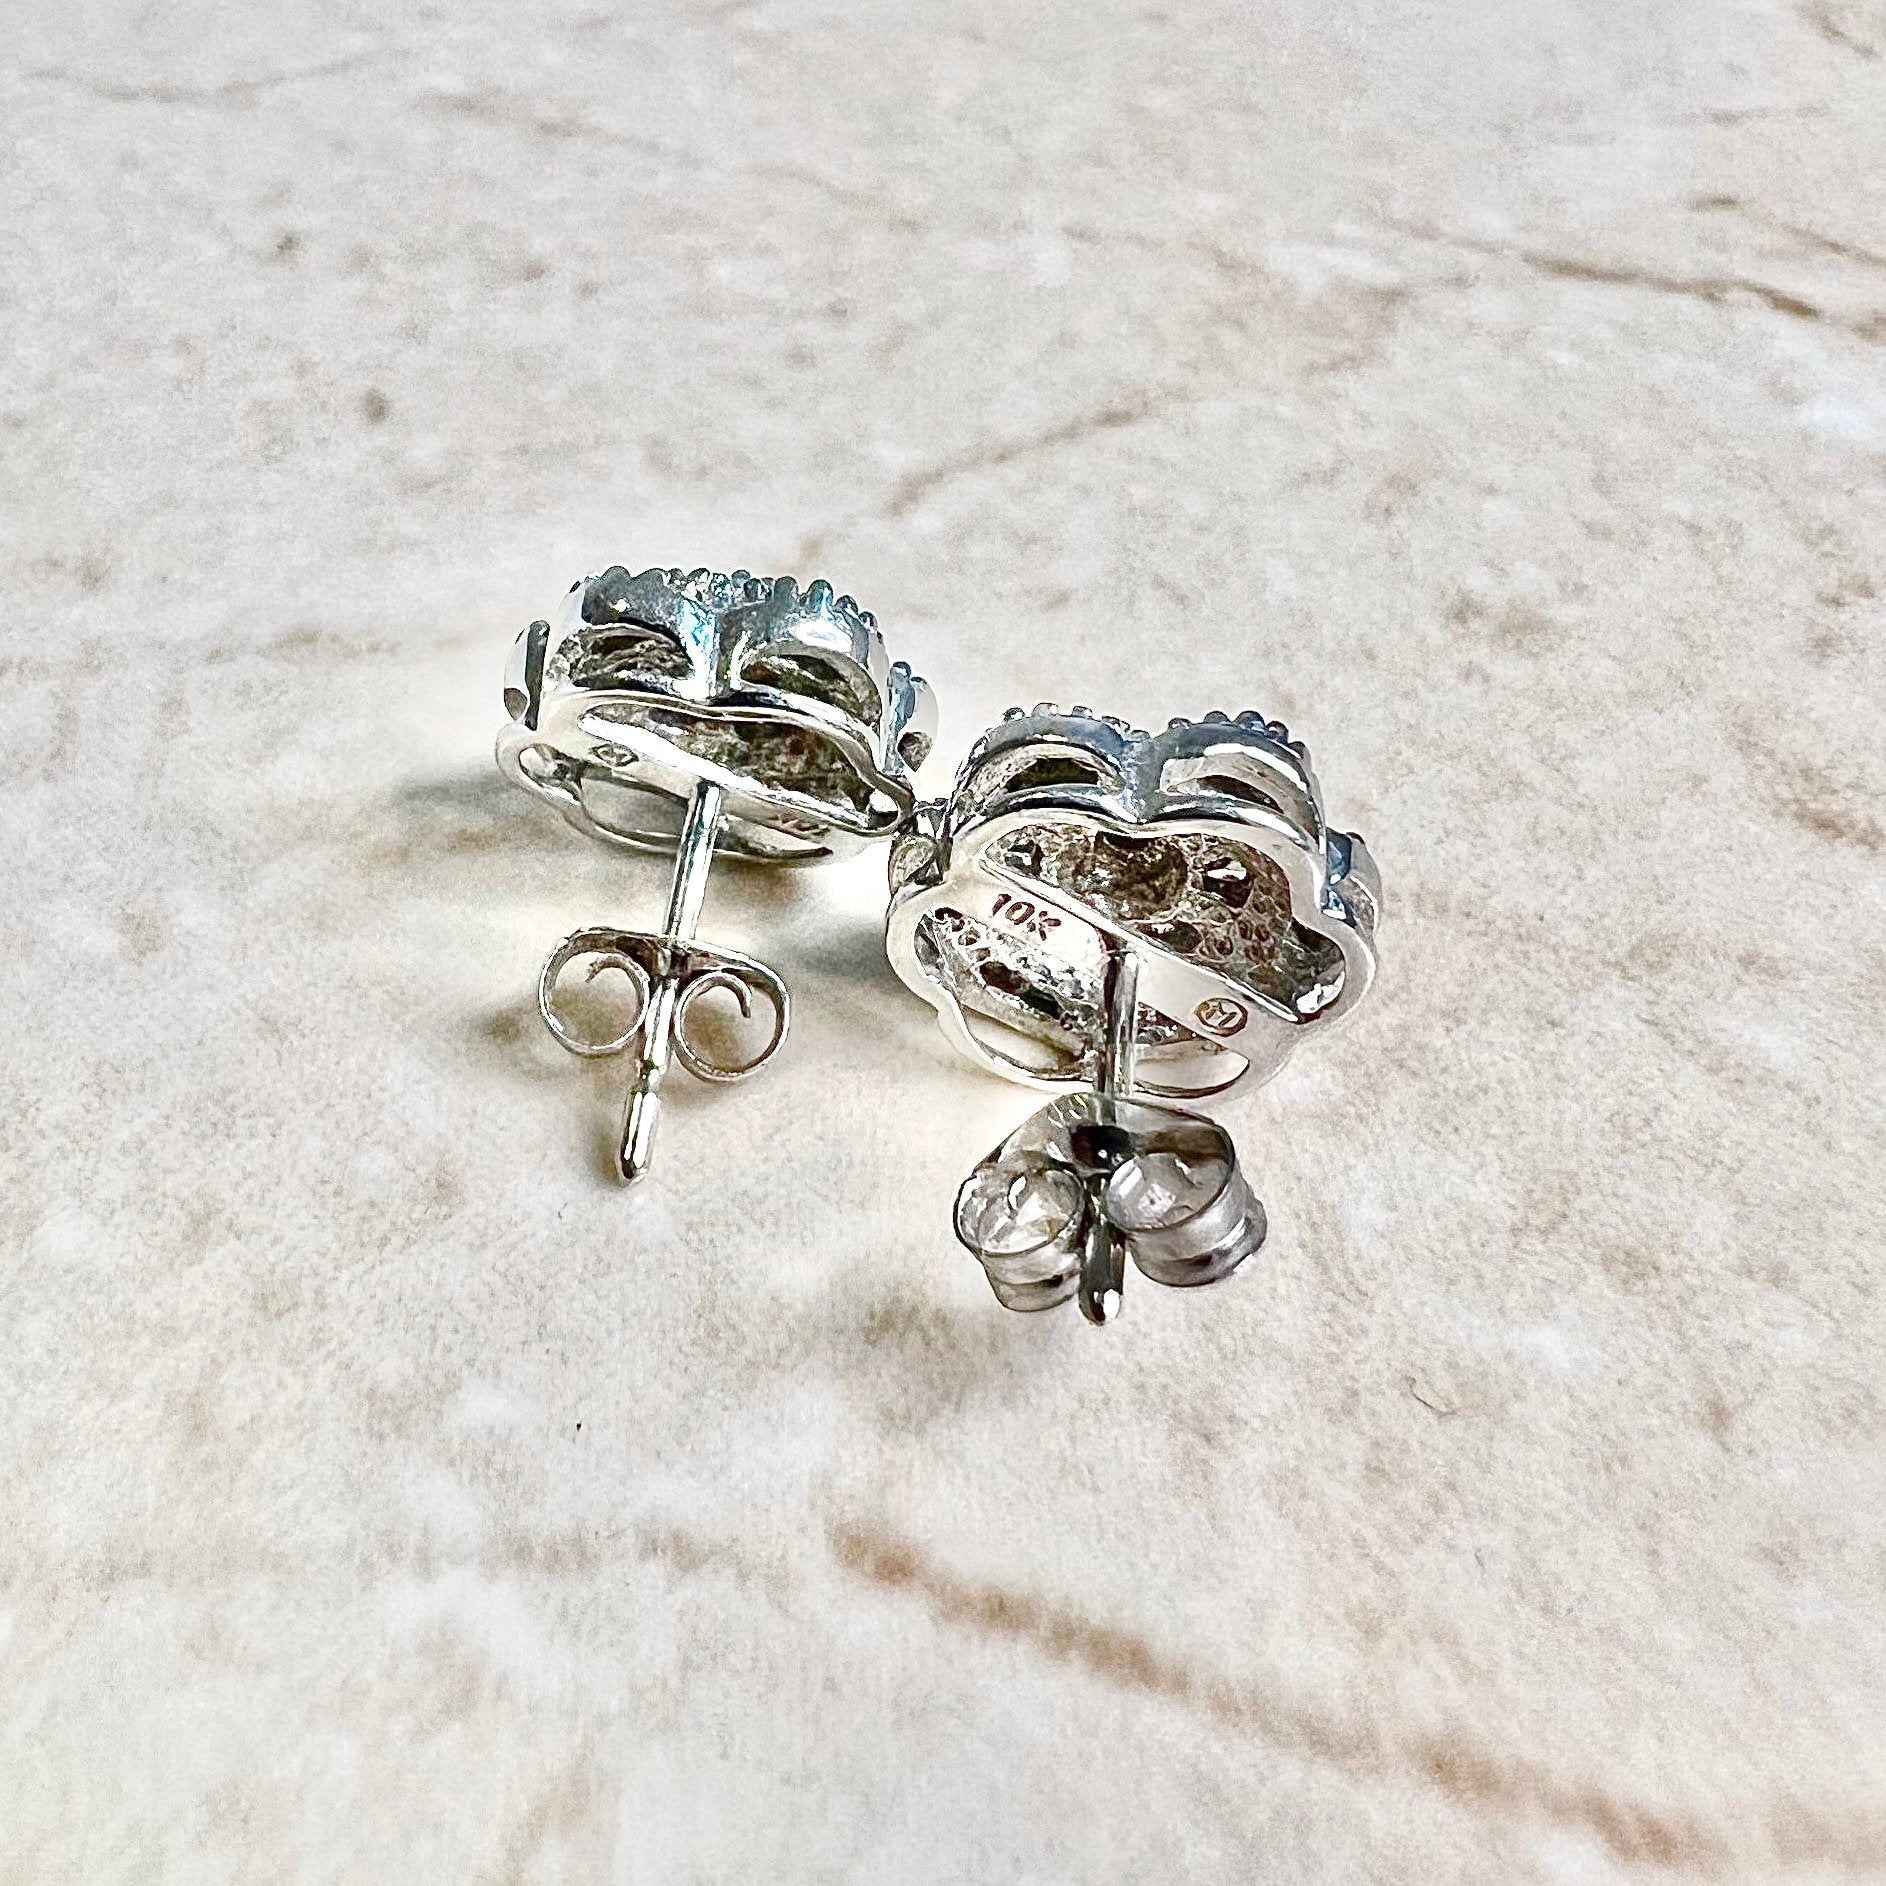 10K Diamond Cluster Stud Earrings 0.35 CTTW - 10K White Gold Diamond Studs - Diamond Halo Earrings - Anniversary Gift - Best Gifts For Her